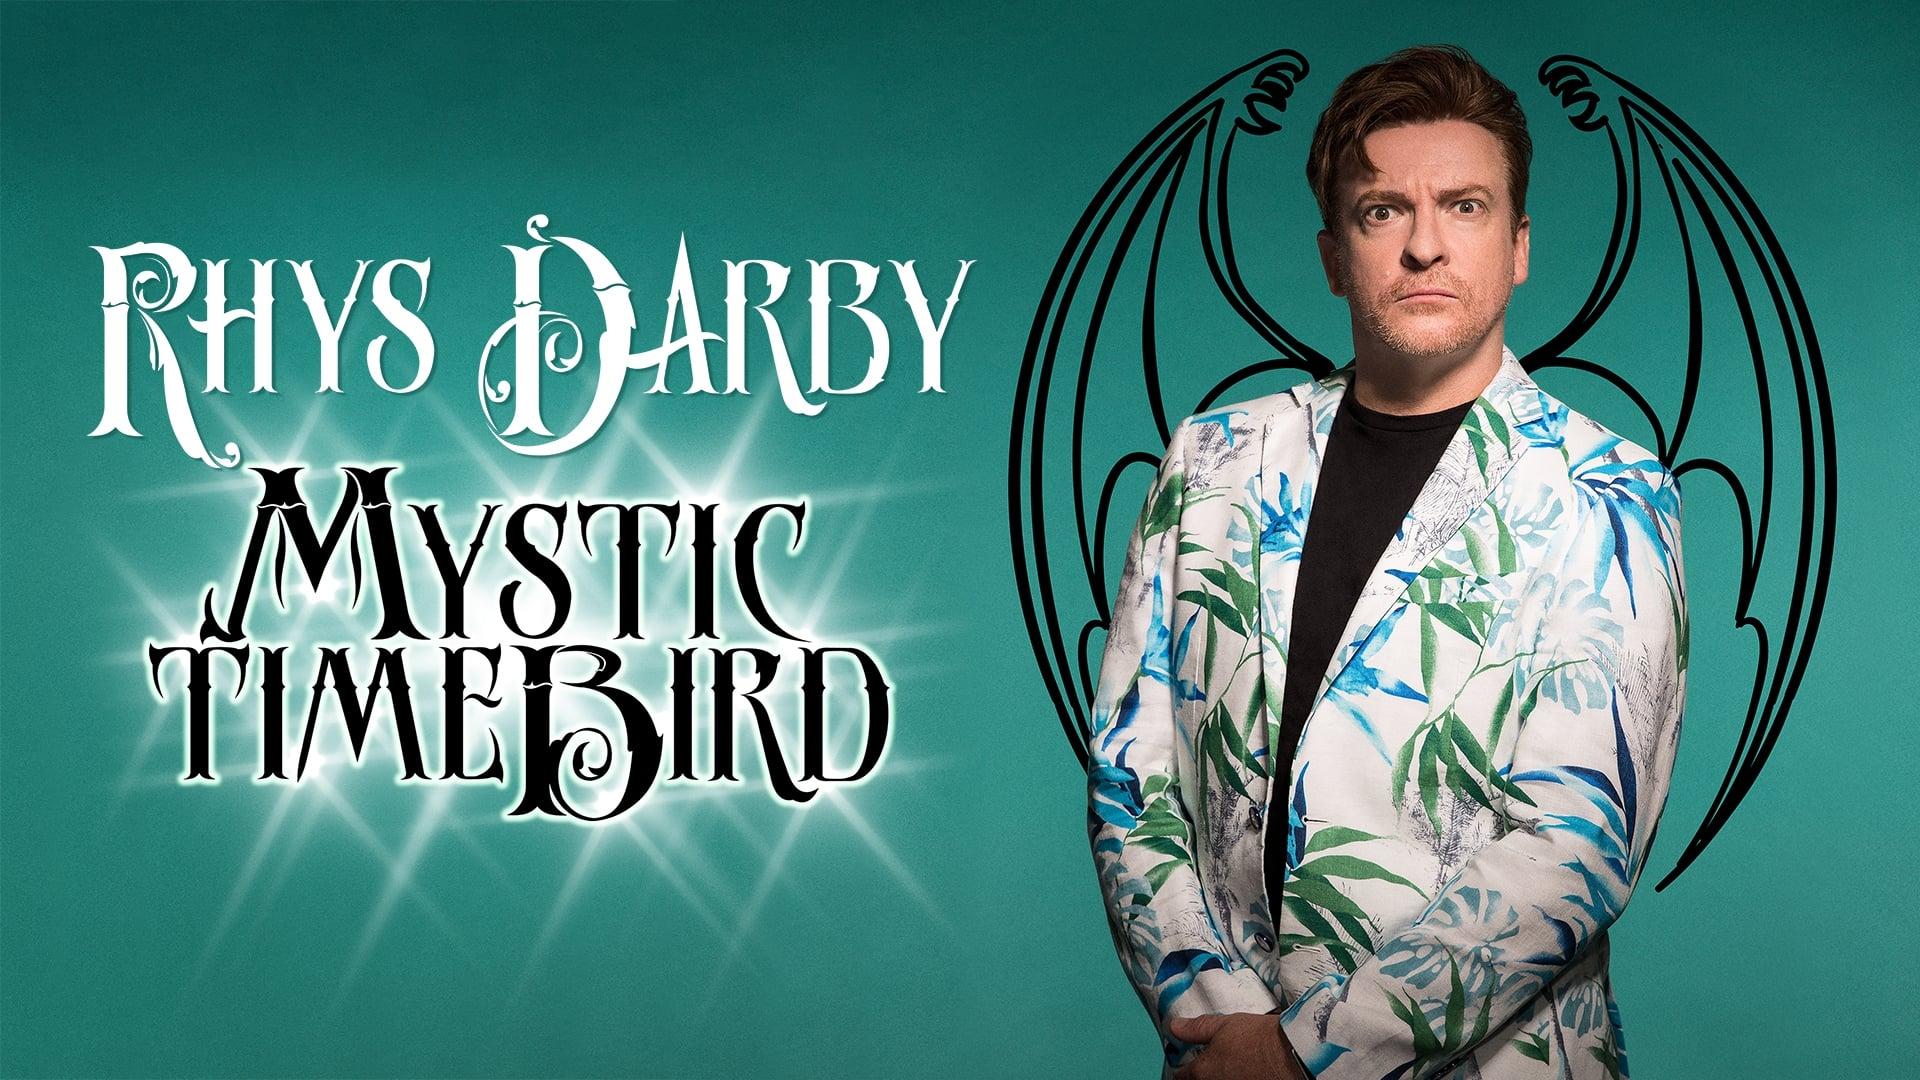 Rhys Darby: Mystic Time Bird backdrop